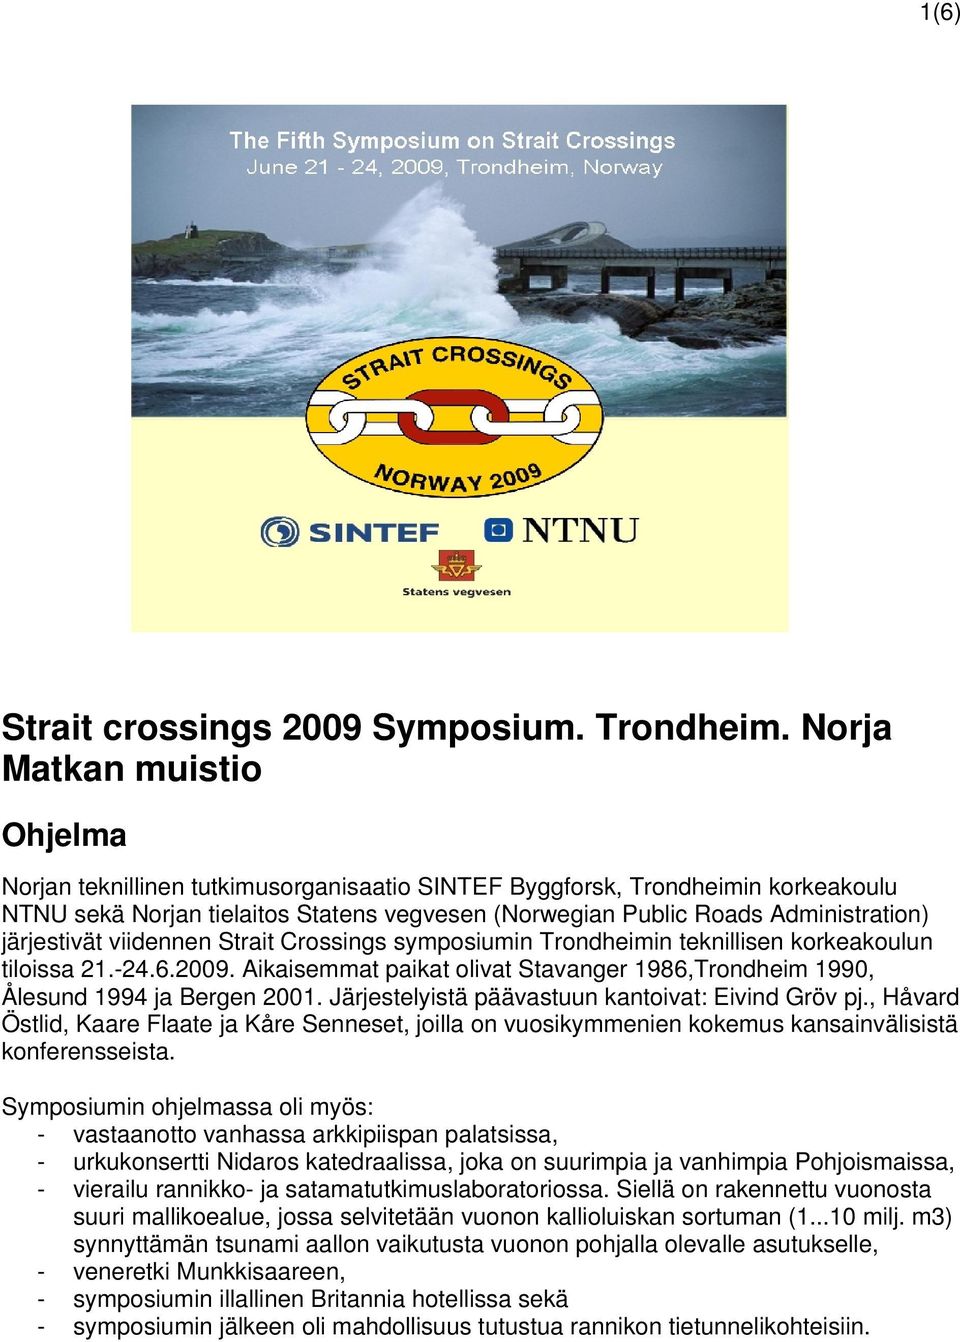 järjestivät viidennen Strait Crossings symposiumin Trondheimin teknillisen korkeakoulun tiloissa 21.-24.6.2009. Aikaisemmat paikat olivat Stavanger 1986,Trondheim 1990, Ålesund 1994 ja Bergen 2001.